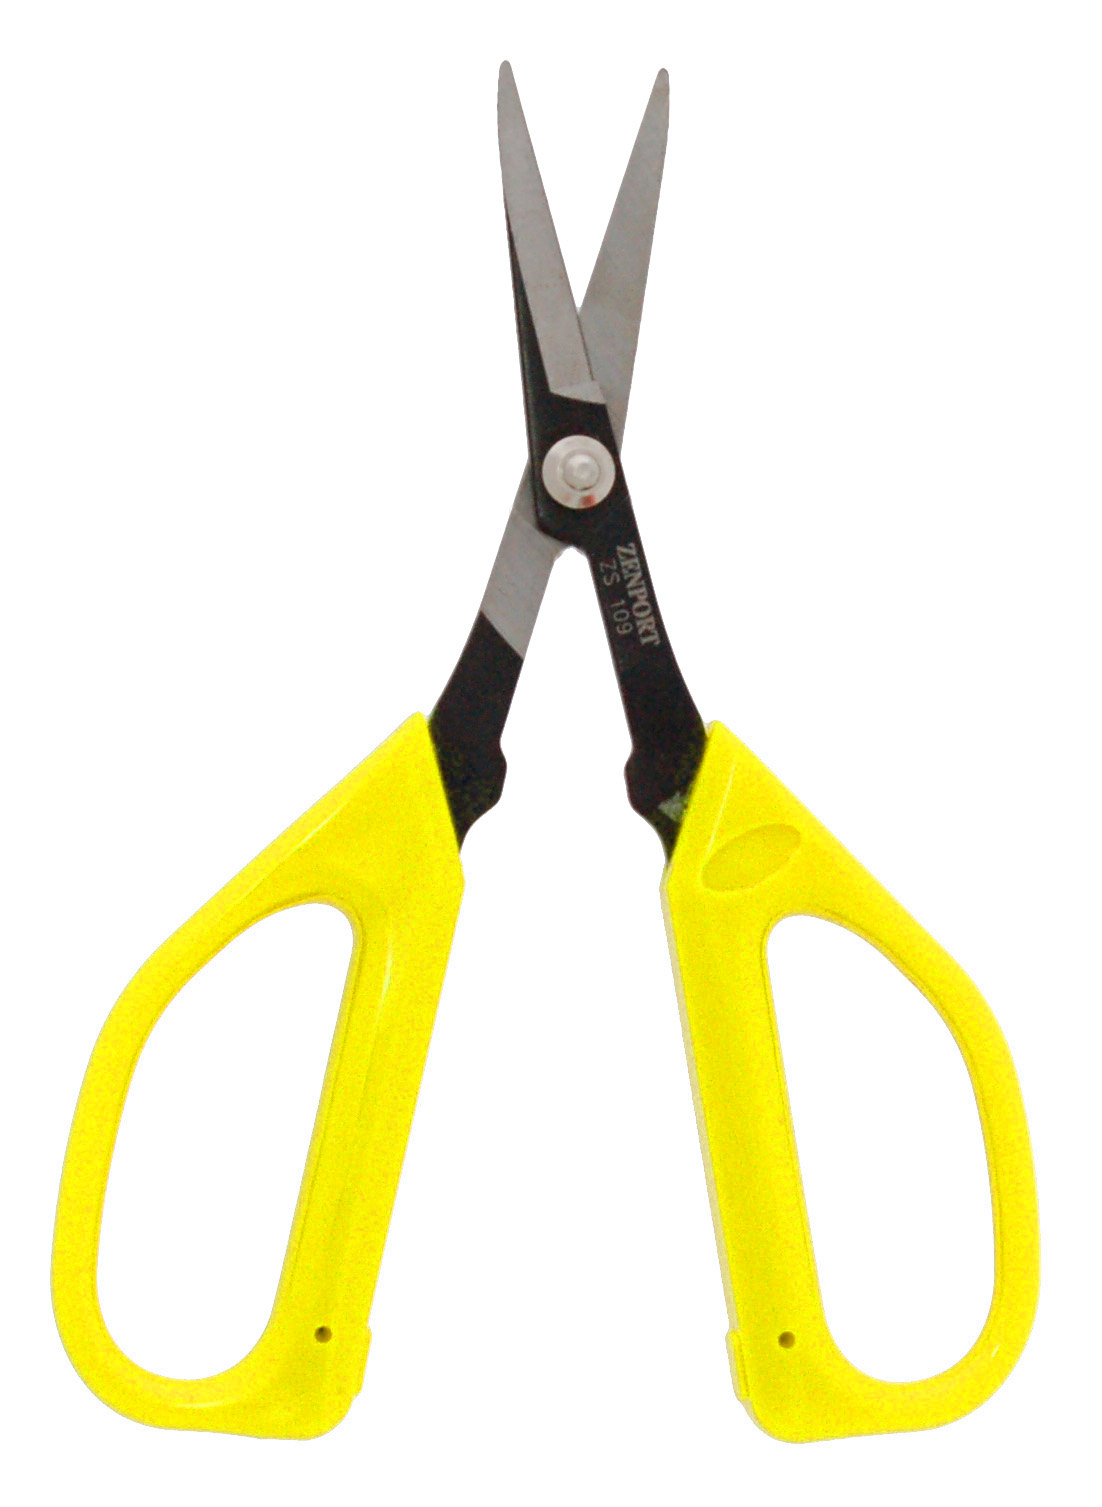 Zenport Scissors ZS109 Deluxe Scissors, Garden, Fruit, Grape, 6.5-Inch Long